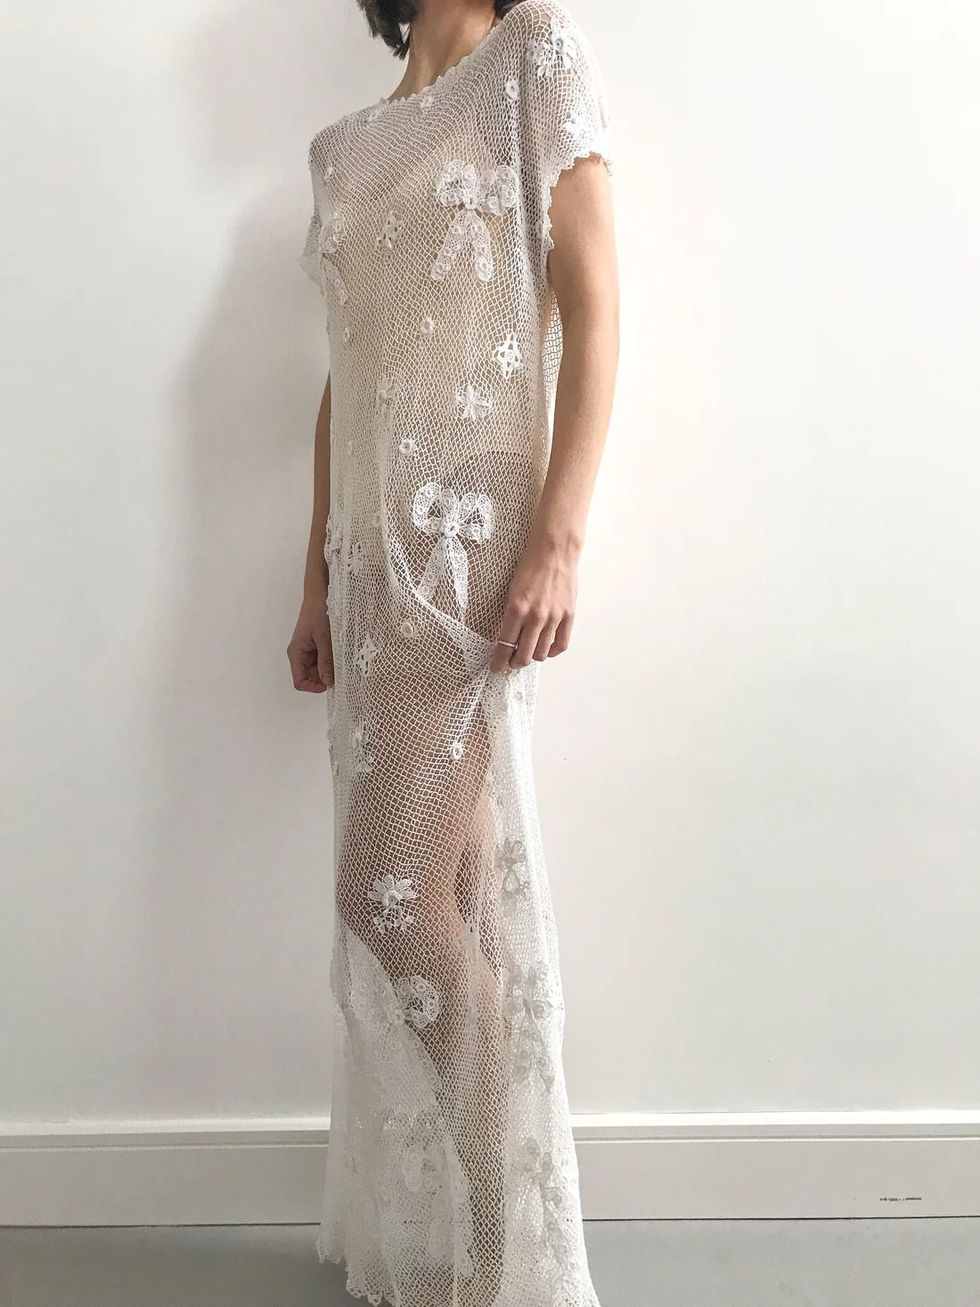 Edwardian Irish Lace Wedding Dress - Size M/L